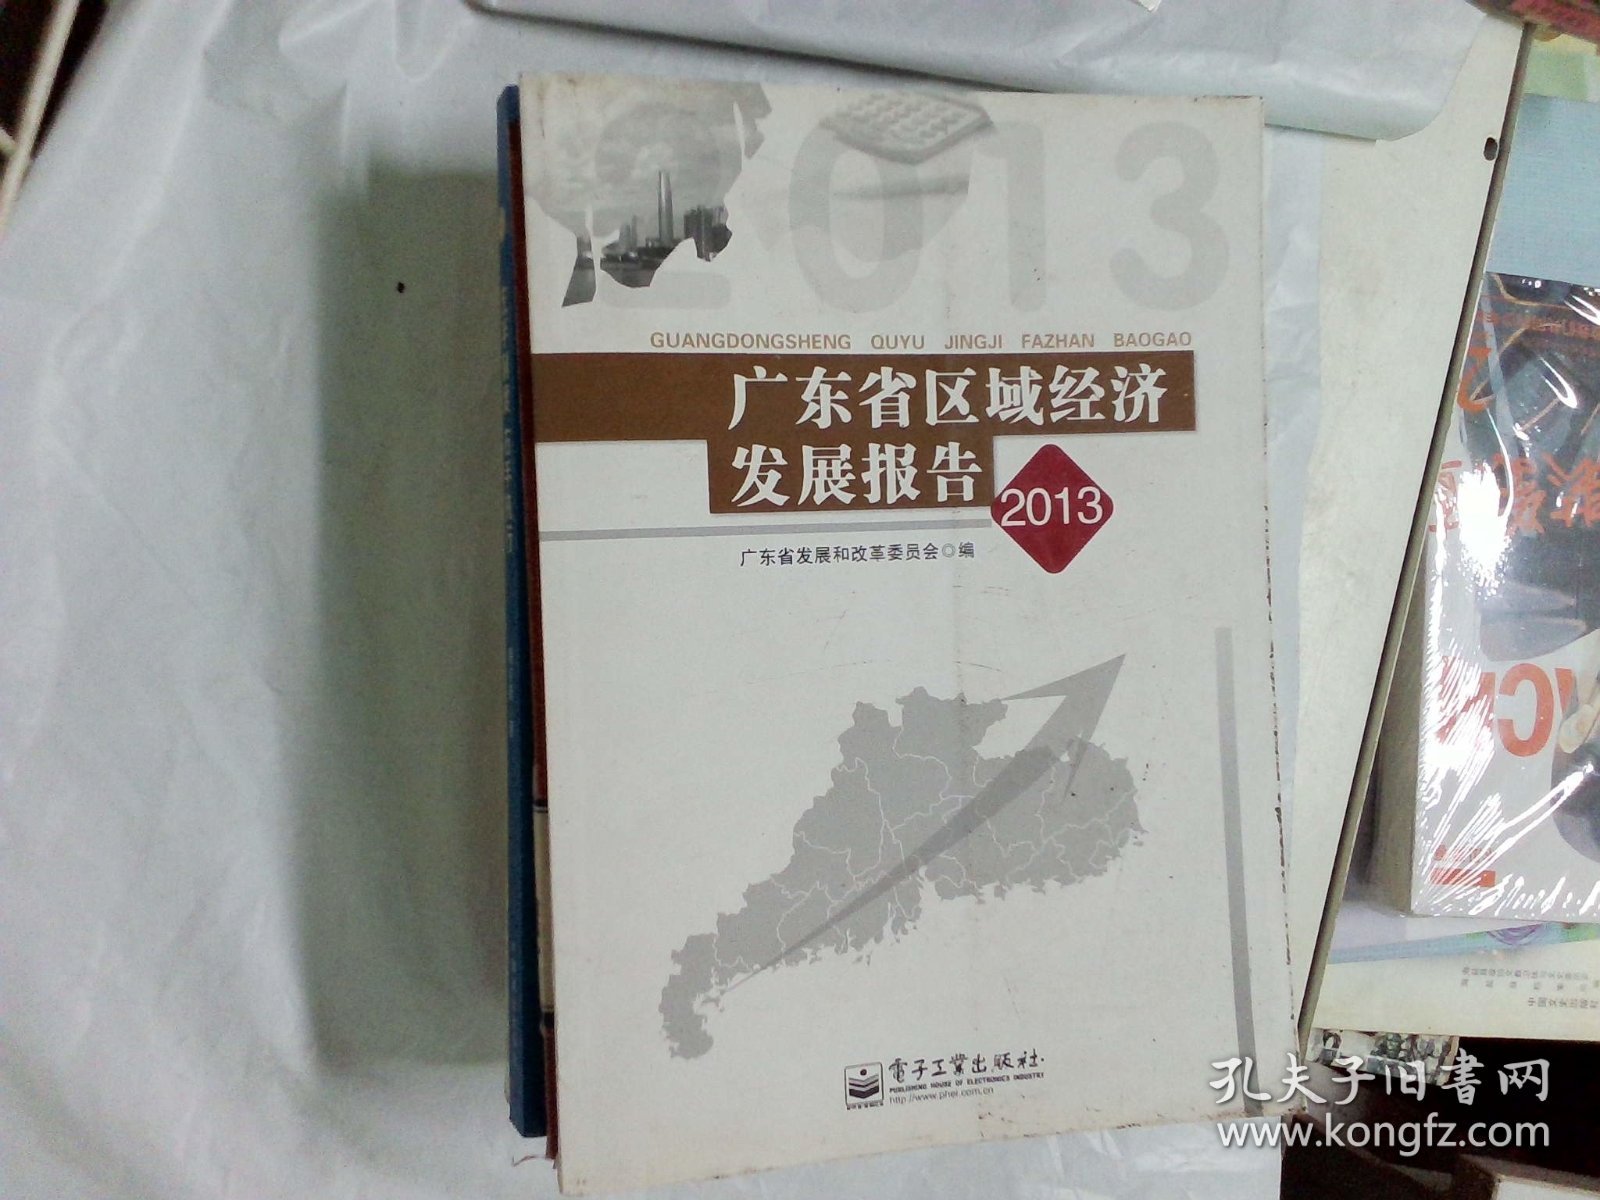 广东省区域经济发展报告. 2013